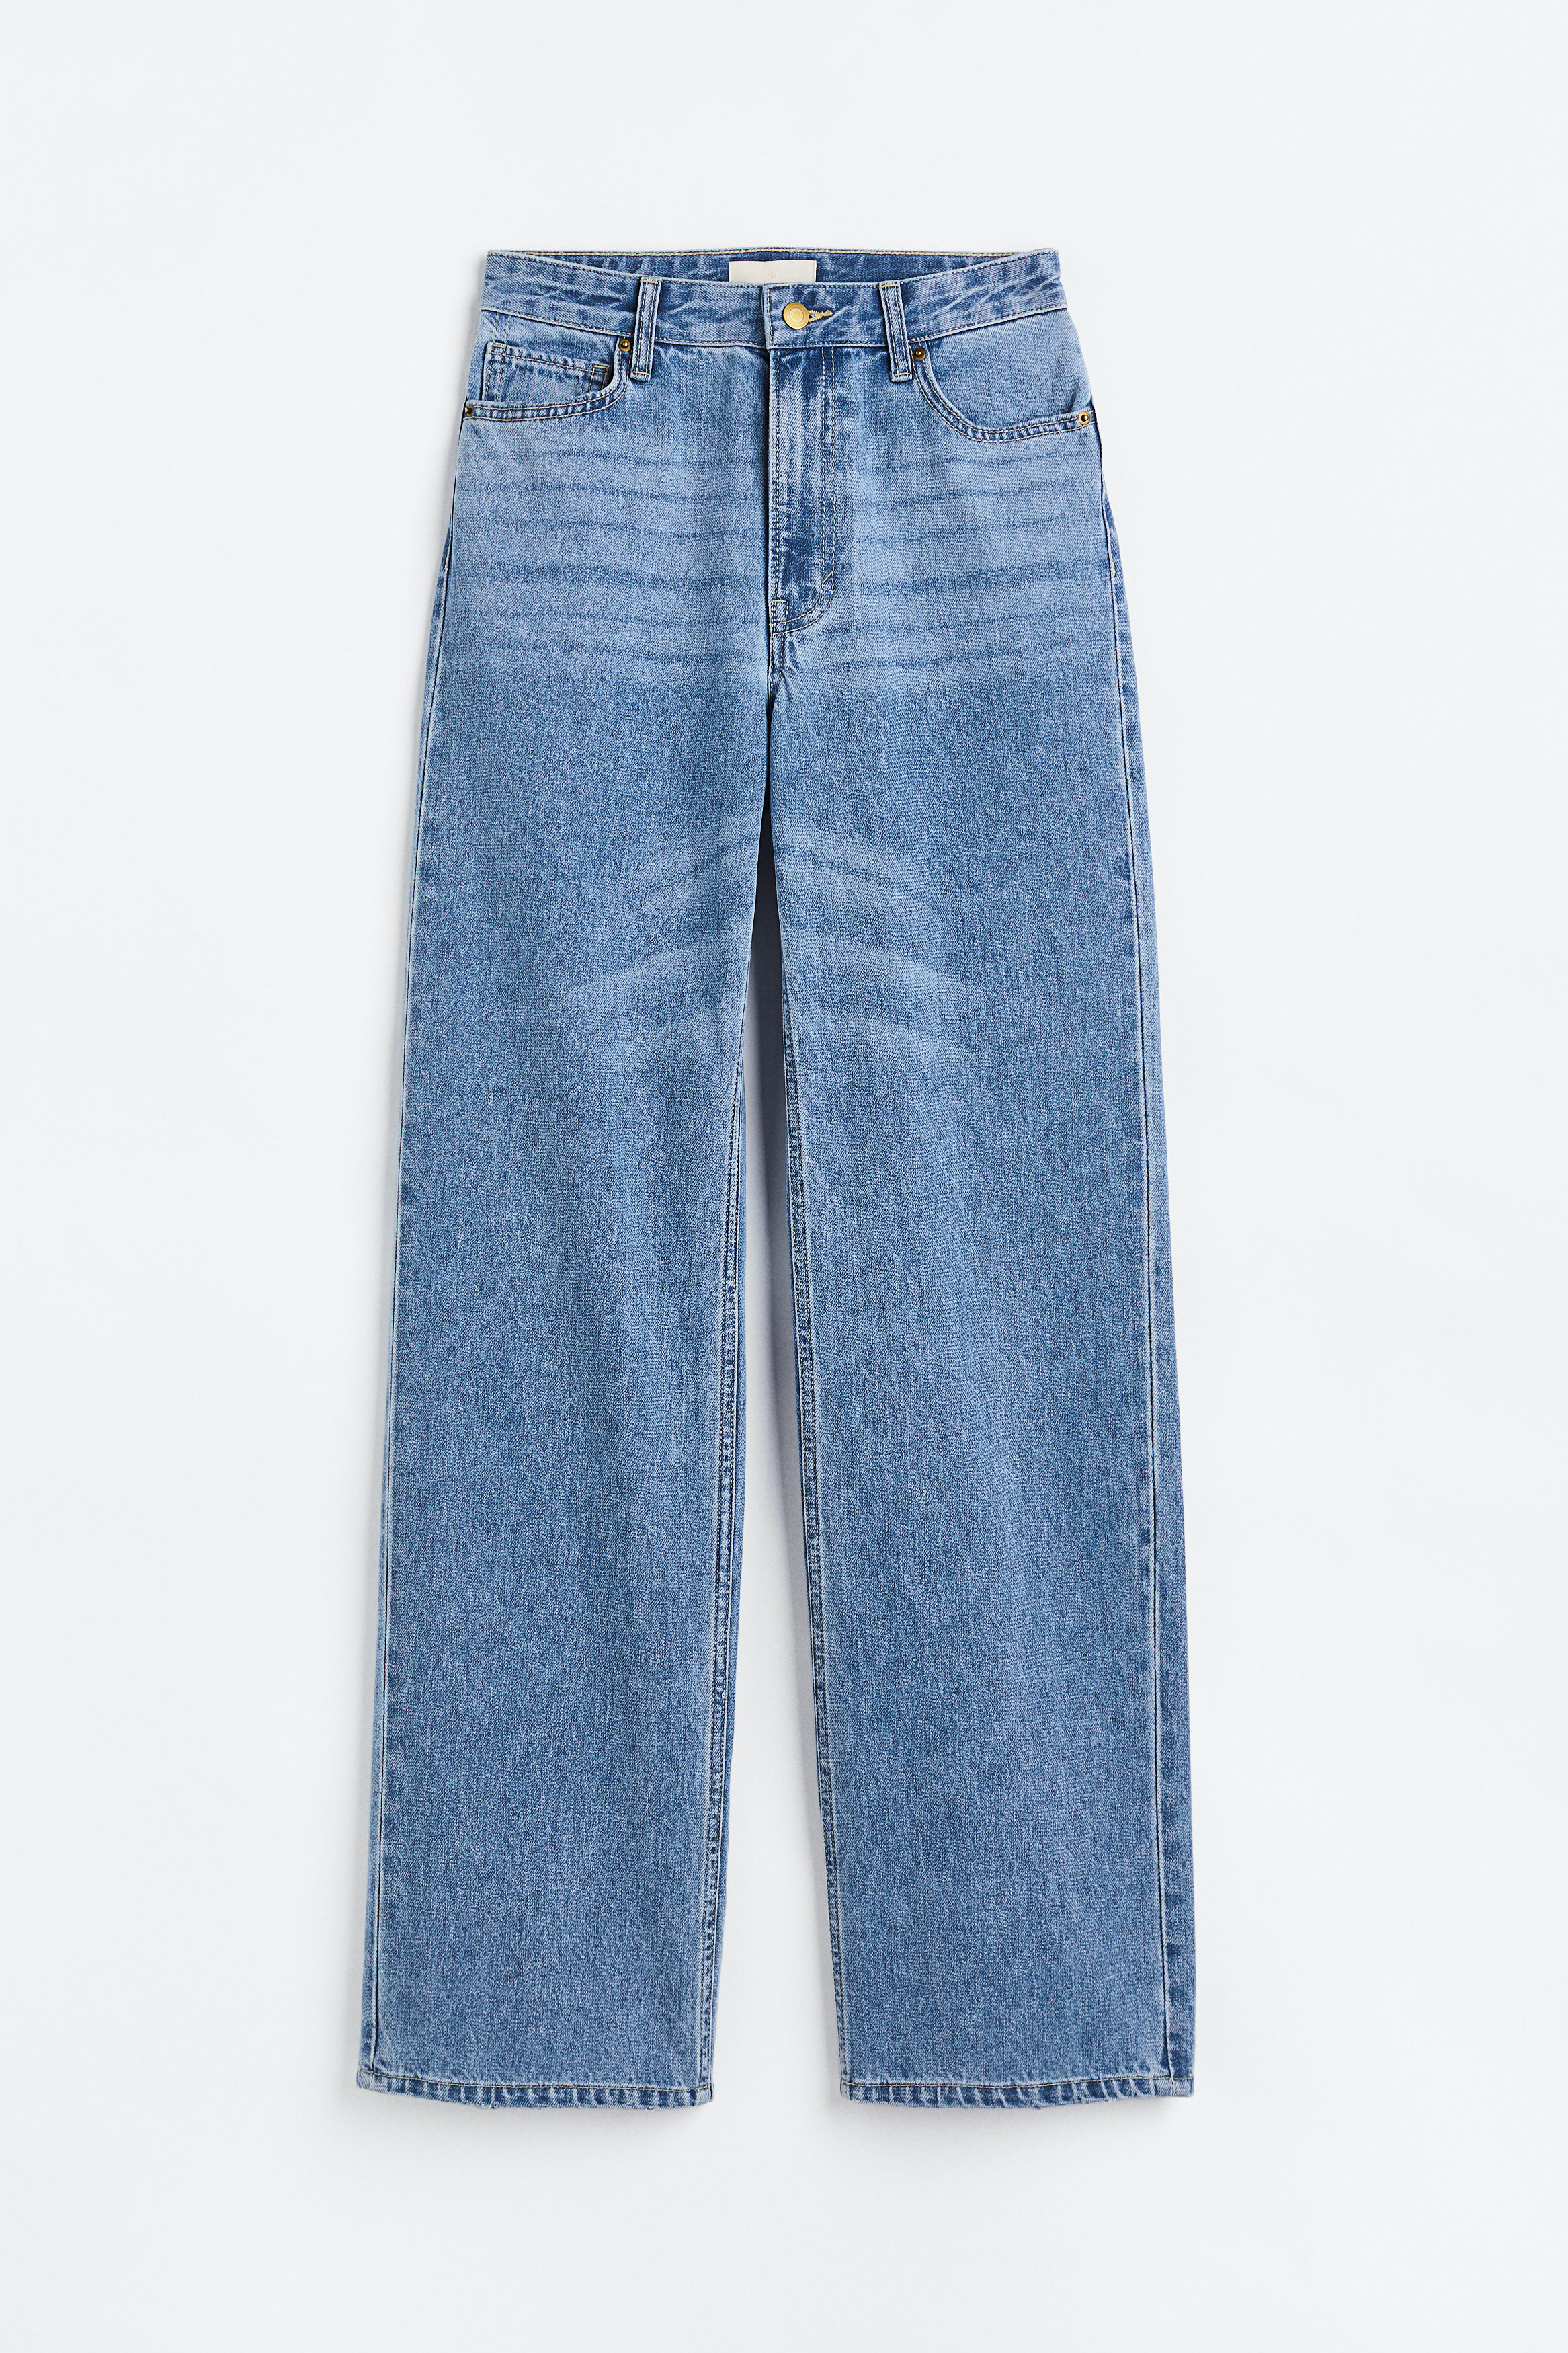 Billede af H&M Straight Regular Jeans Lys Denimblå, jeans. Farve: Light denim blue I størrelse 32